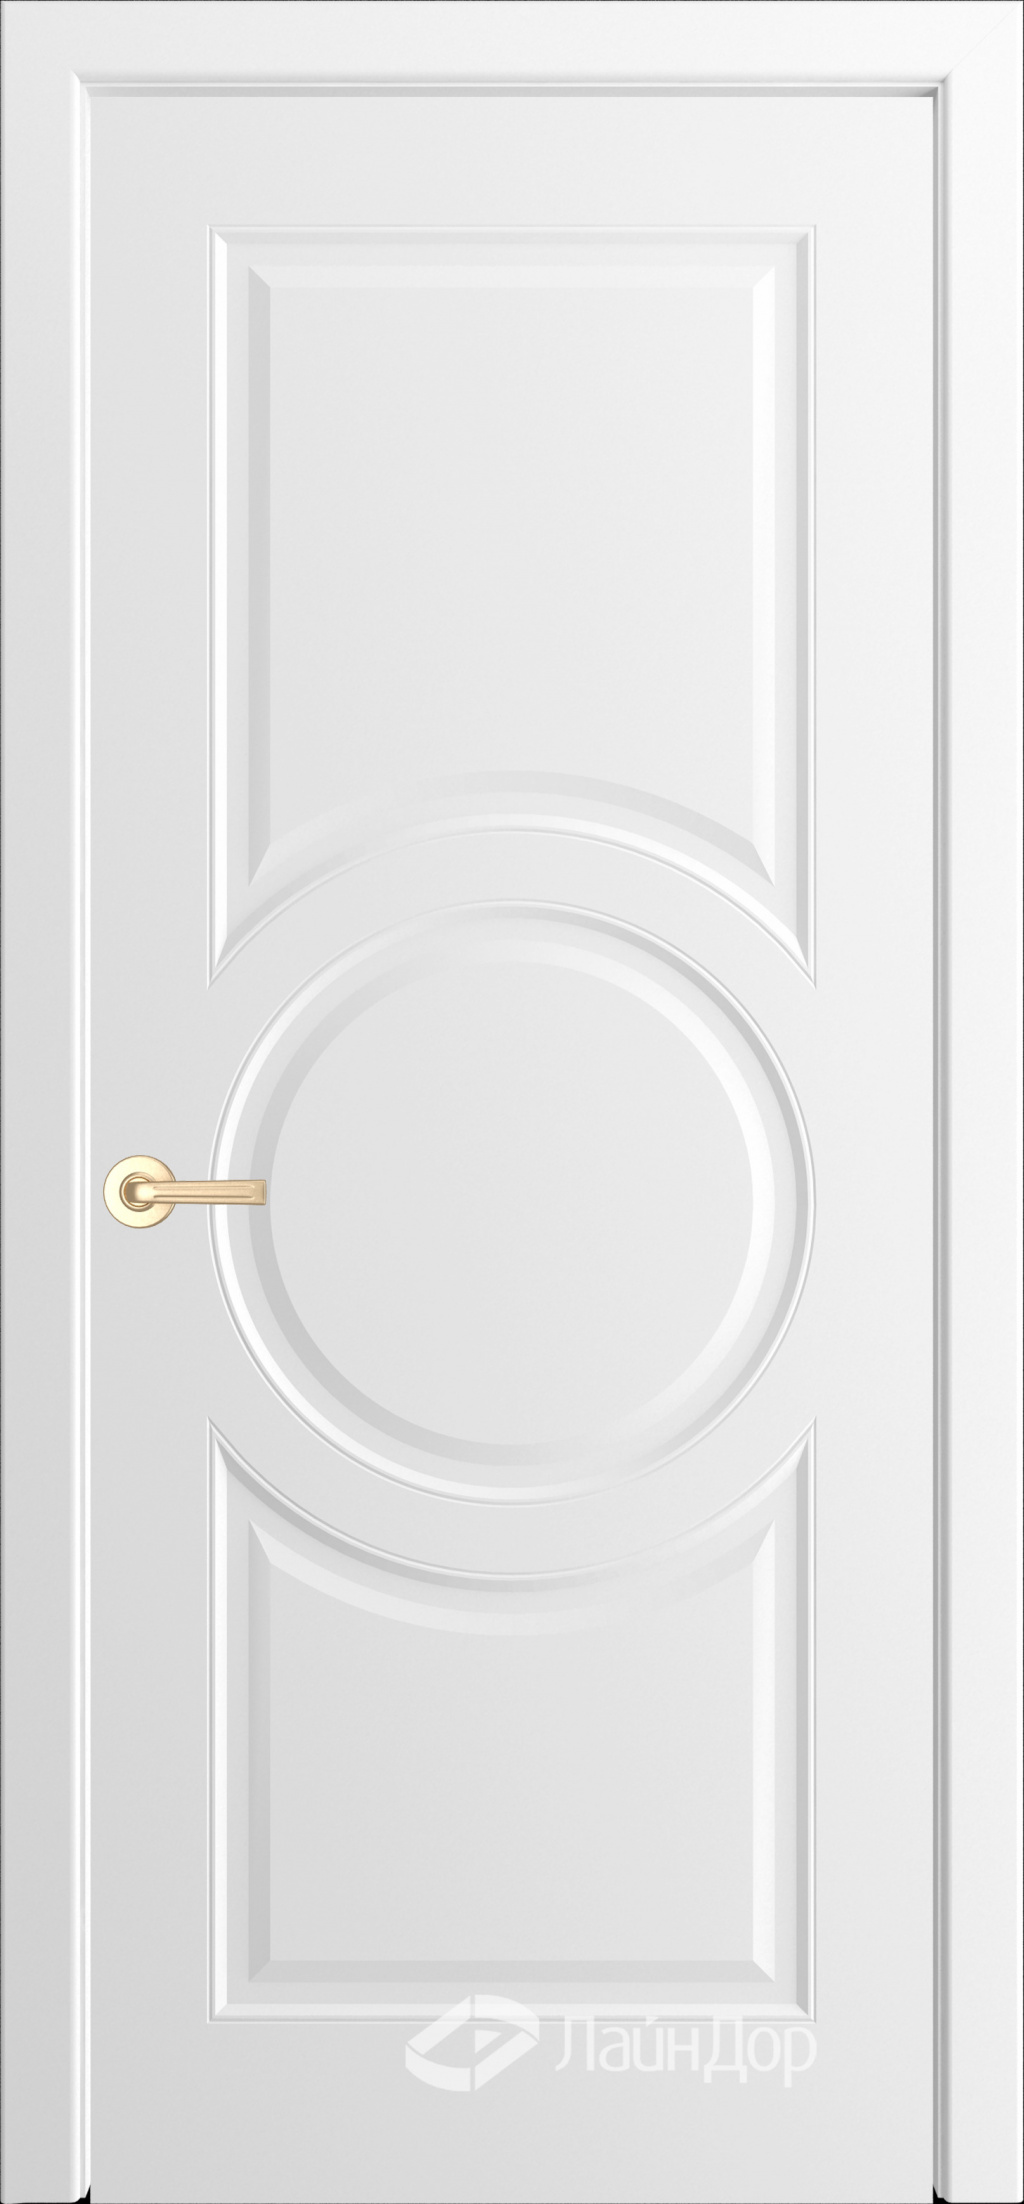 ЛайнДор Межкомнатная дверь Мирра-ФП3 эмаль, арт. 10571 - фото №3